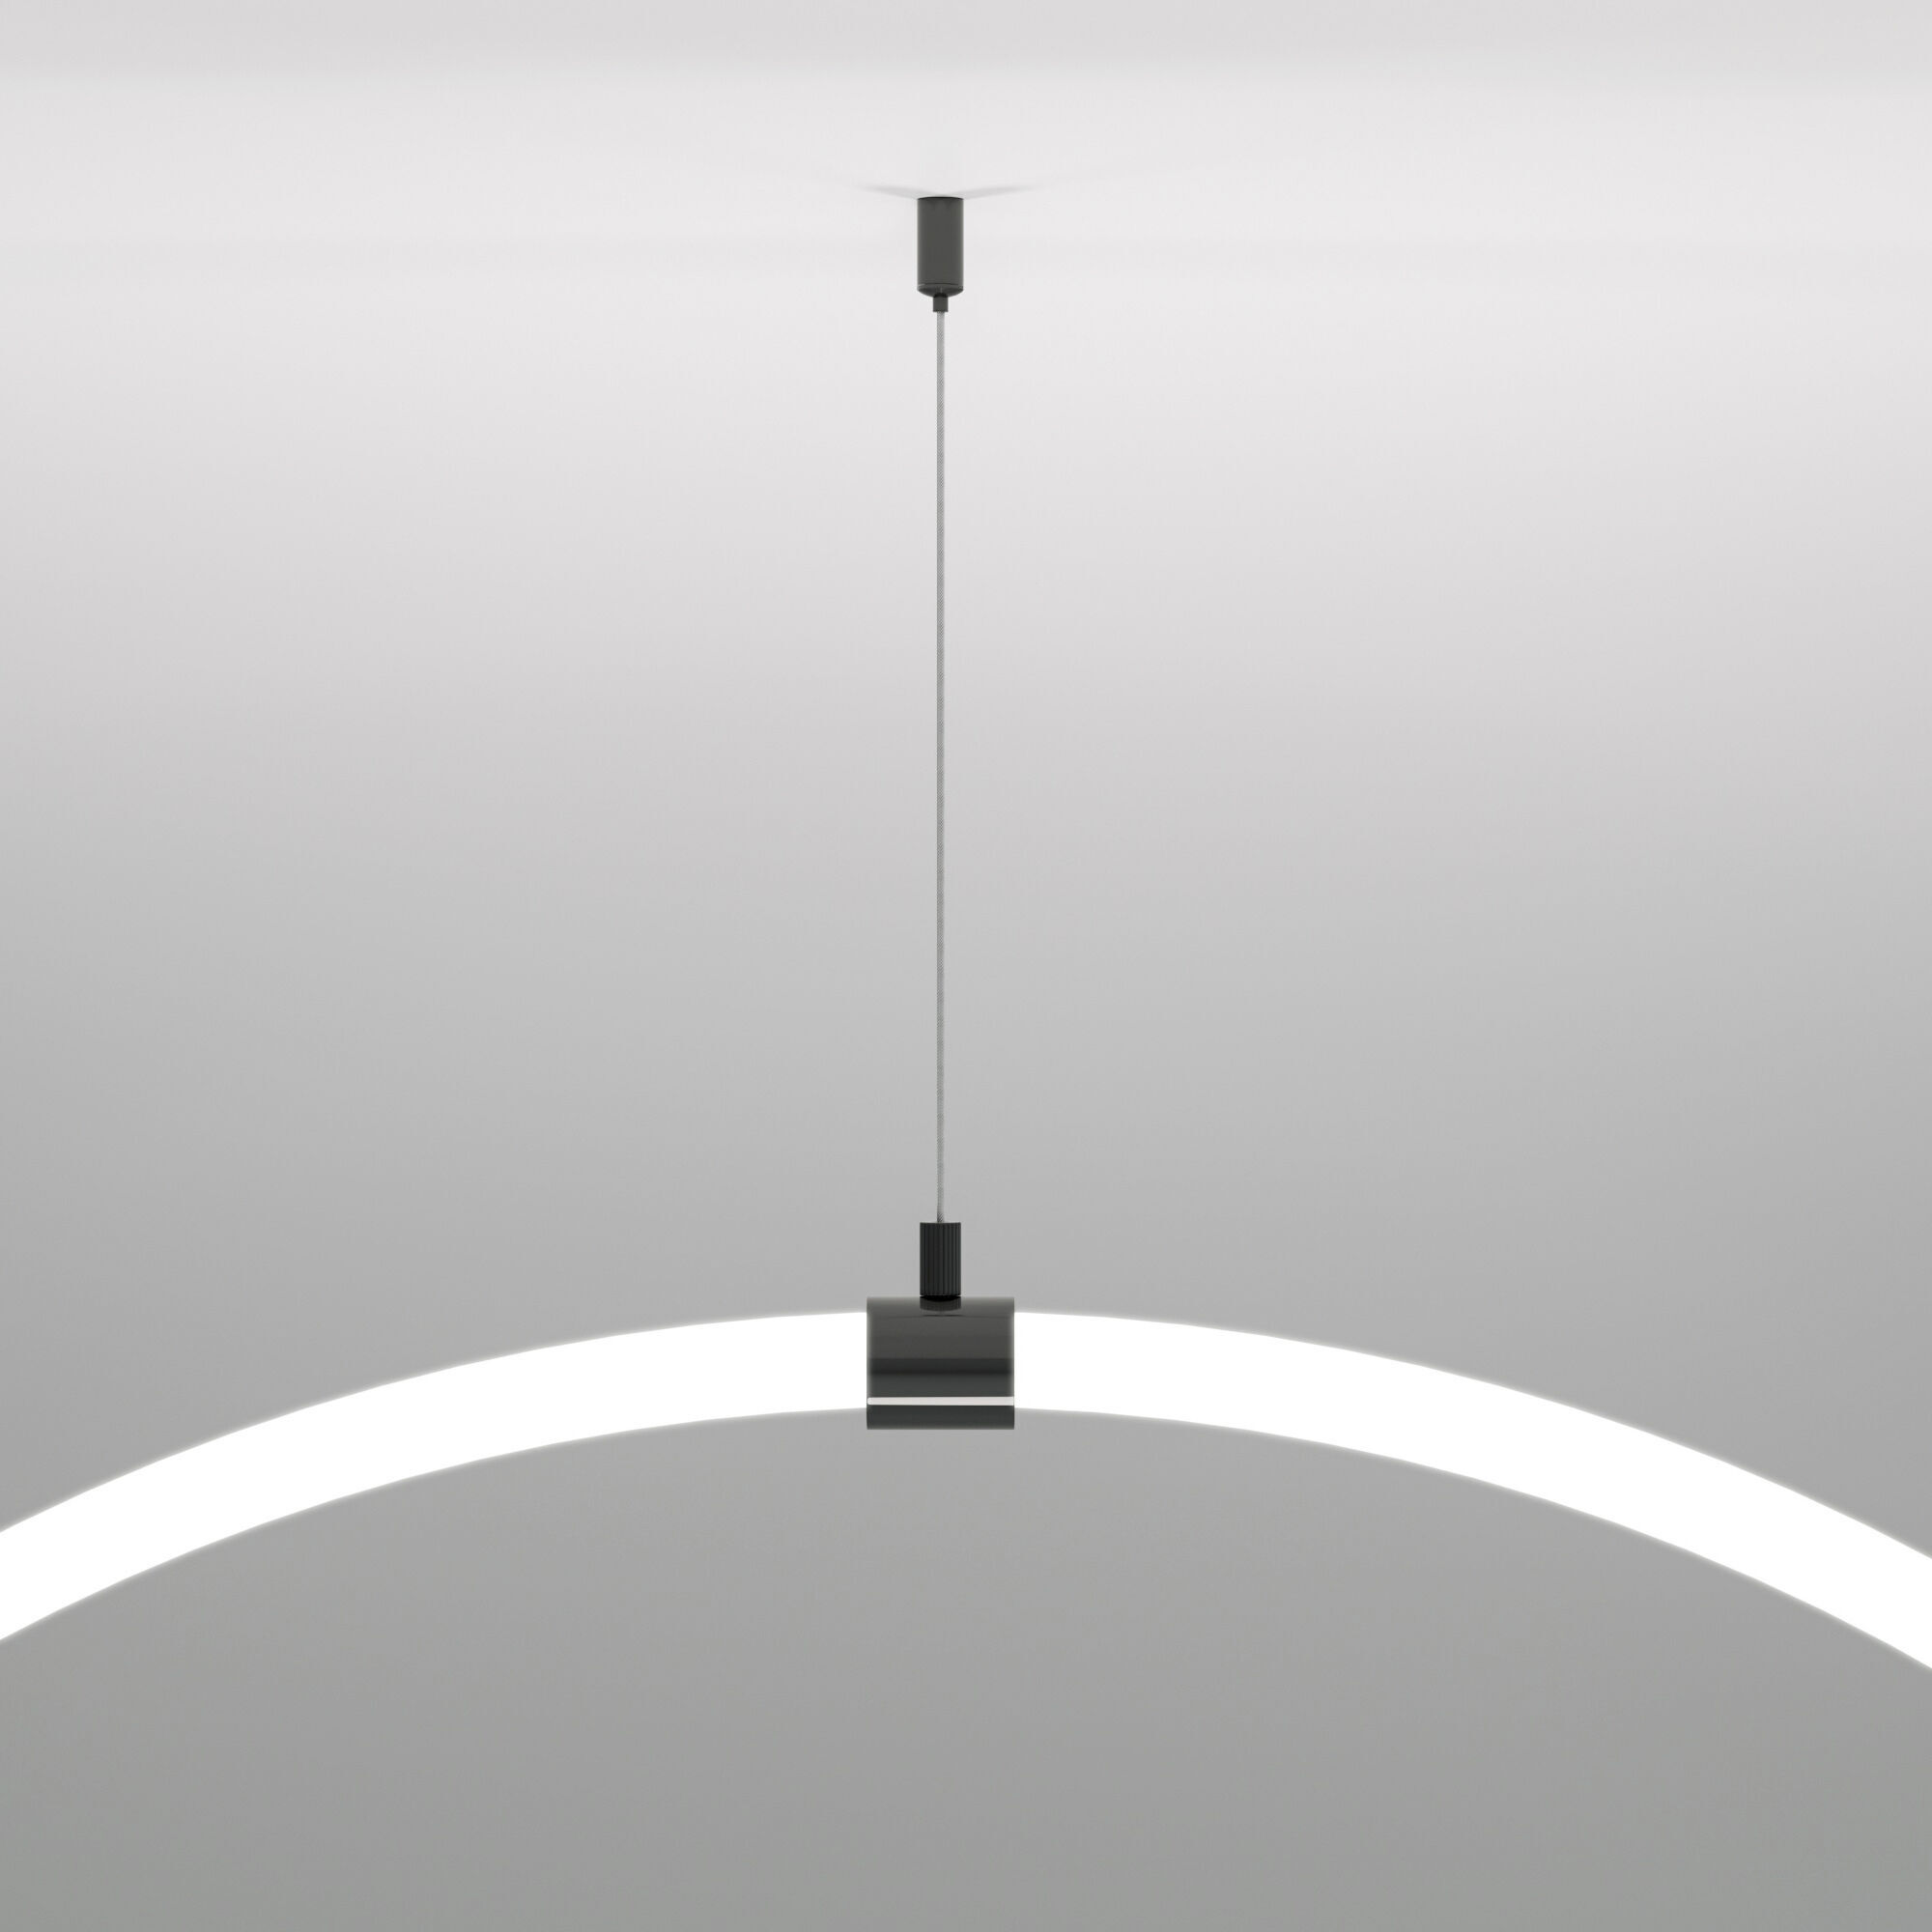 Подвесной трос для круглого гибкого неона Full light черный 2 м Elektrostandard Full light FL 2830. Фото 1